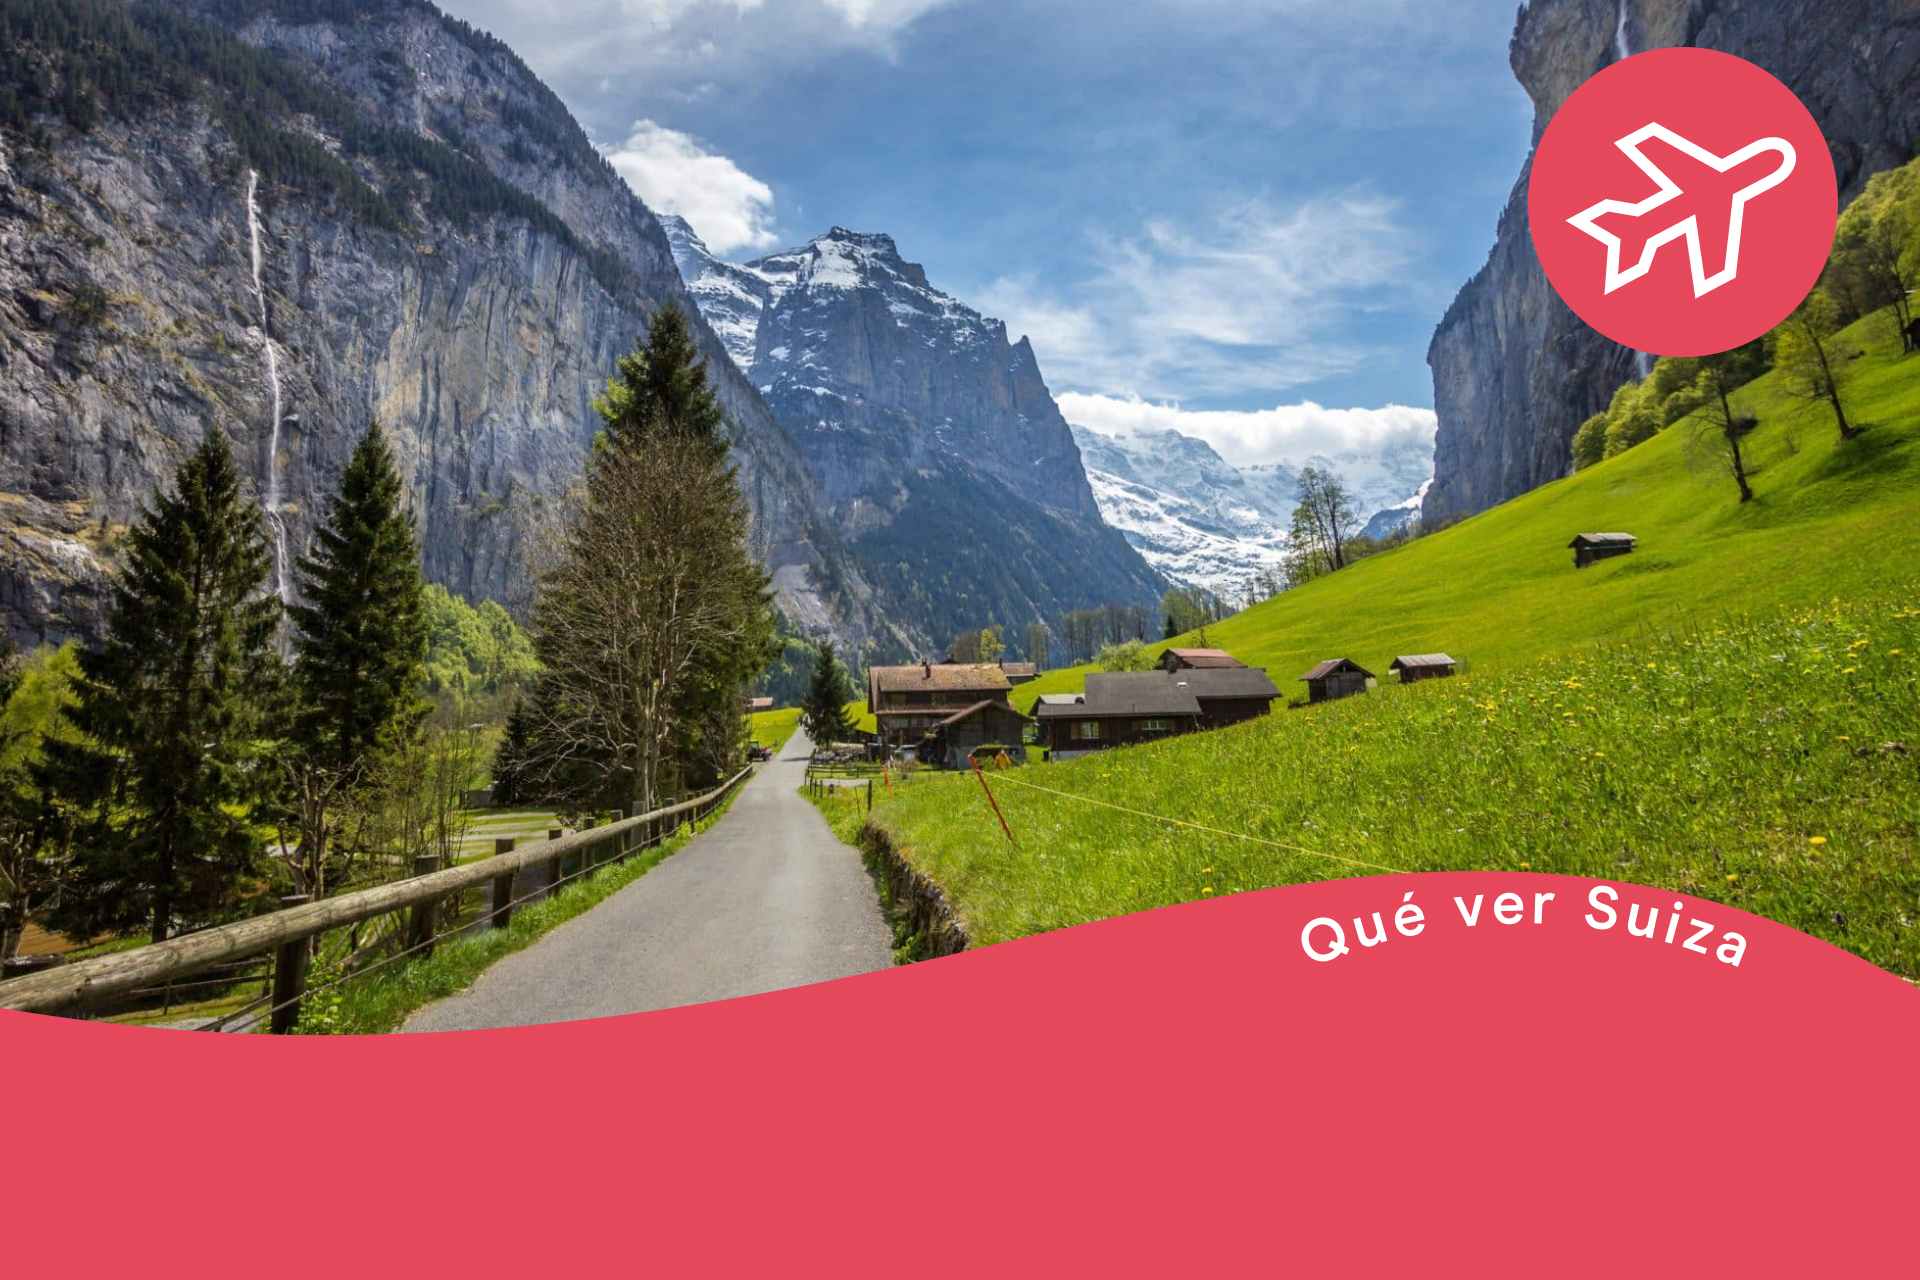 Descubre la belleza de Montreux en Suiza: guía turística y consejos útiles